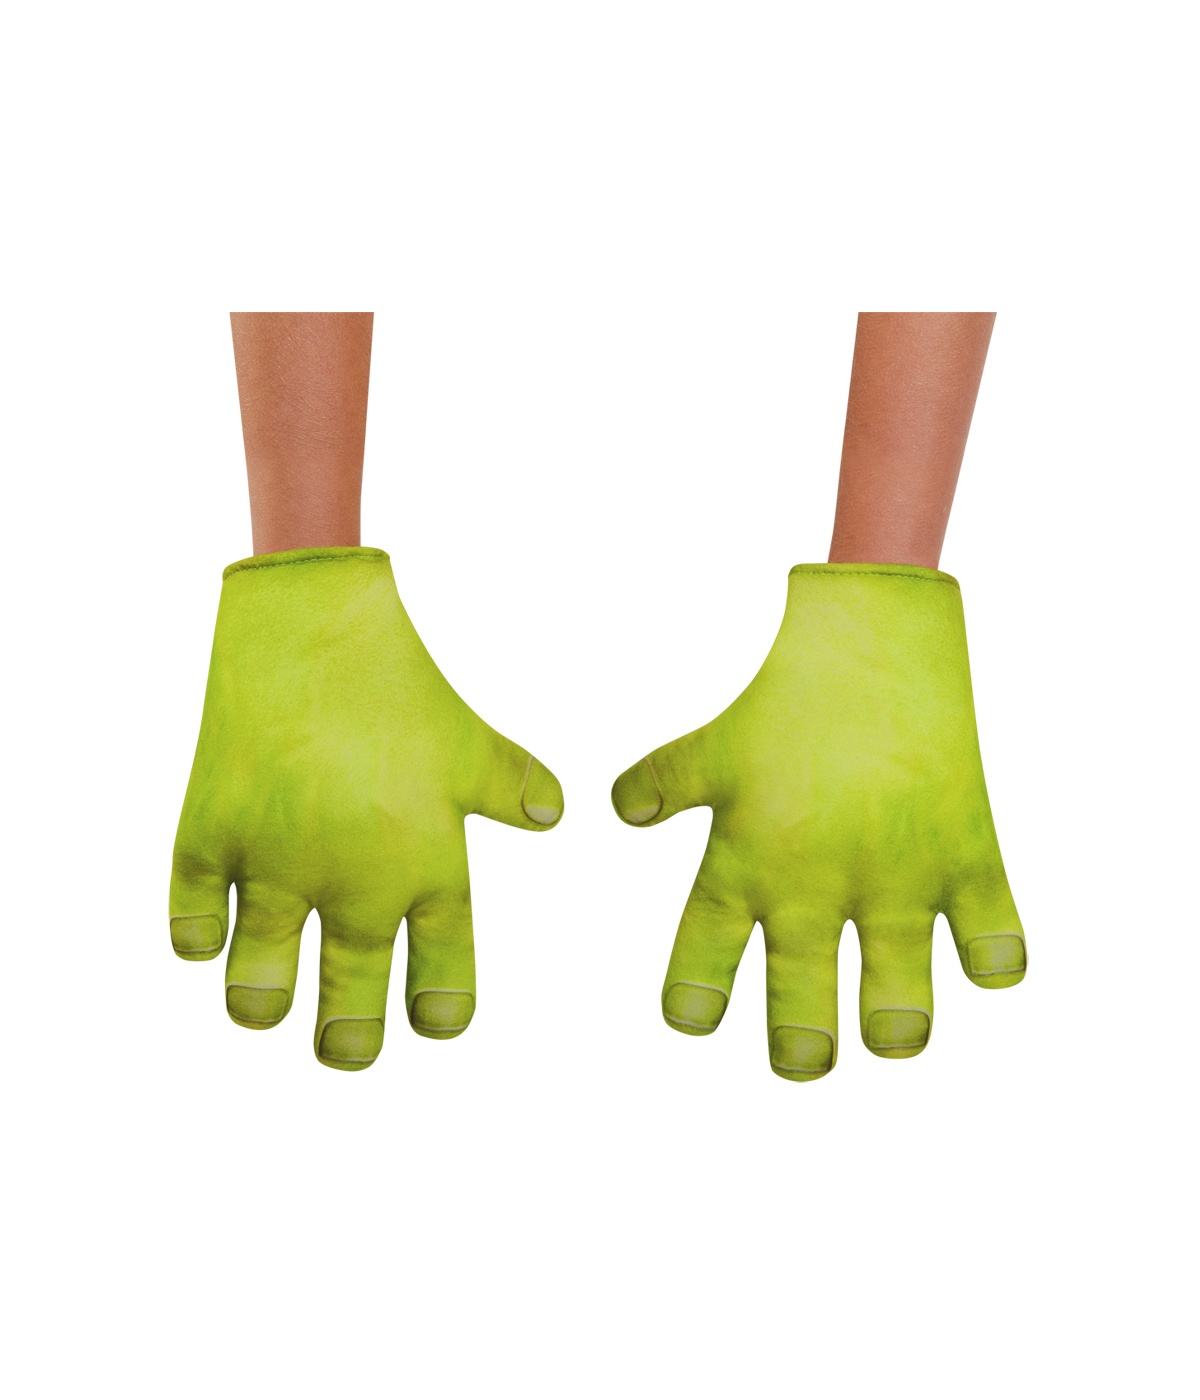  Boys Shrek Hands Gloves